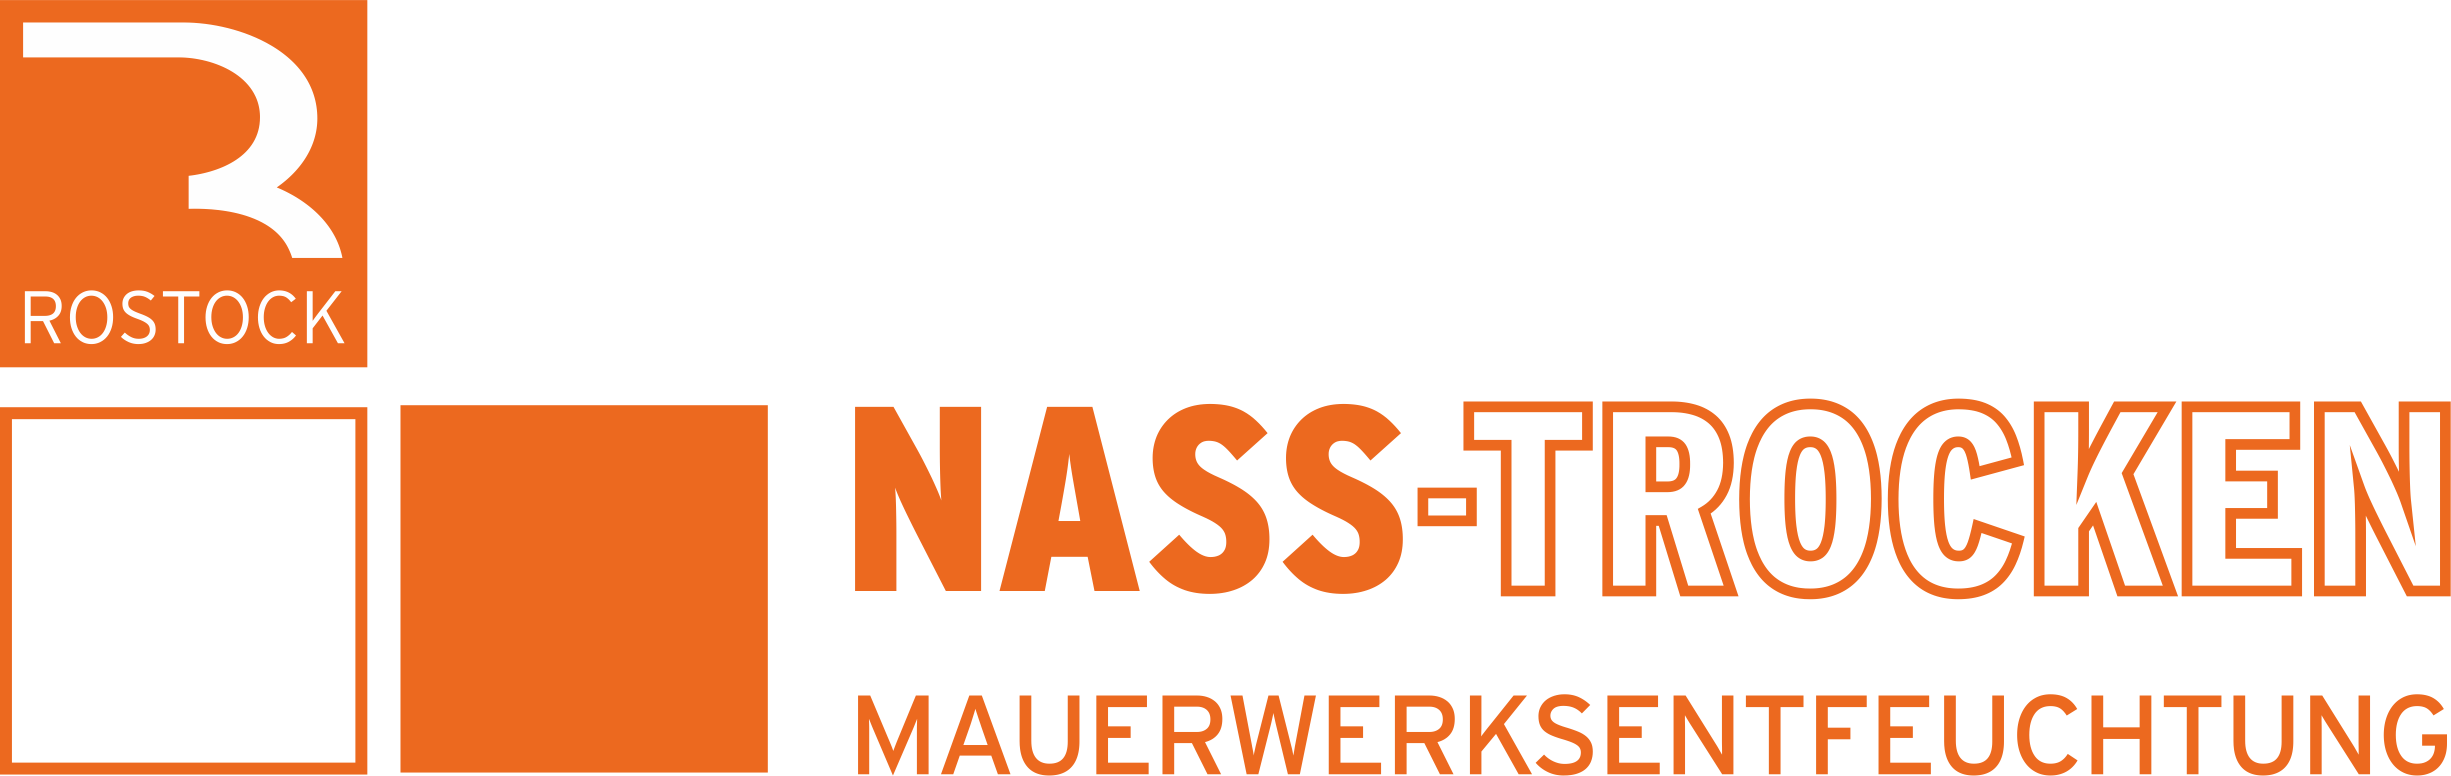 Rostock Logo Nasstrocken 4c